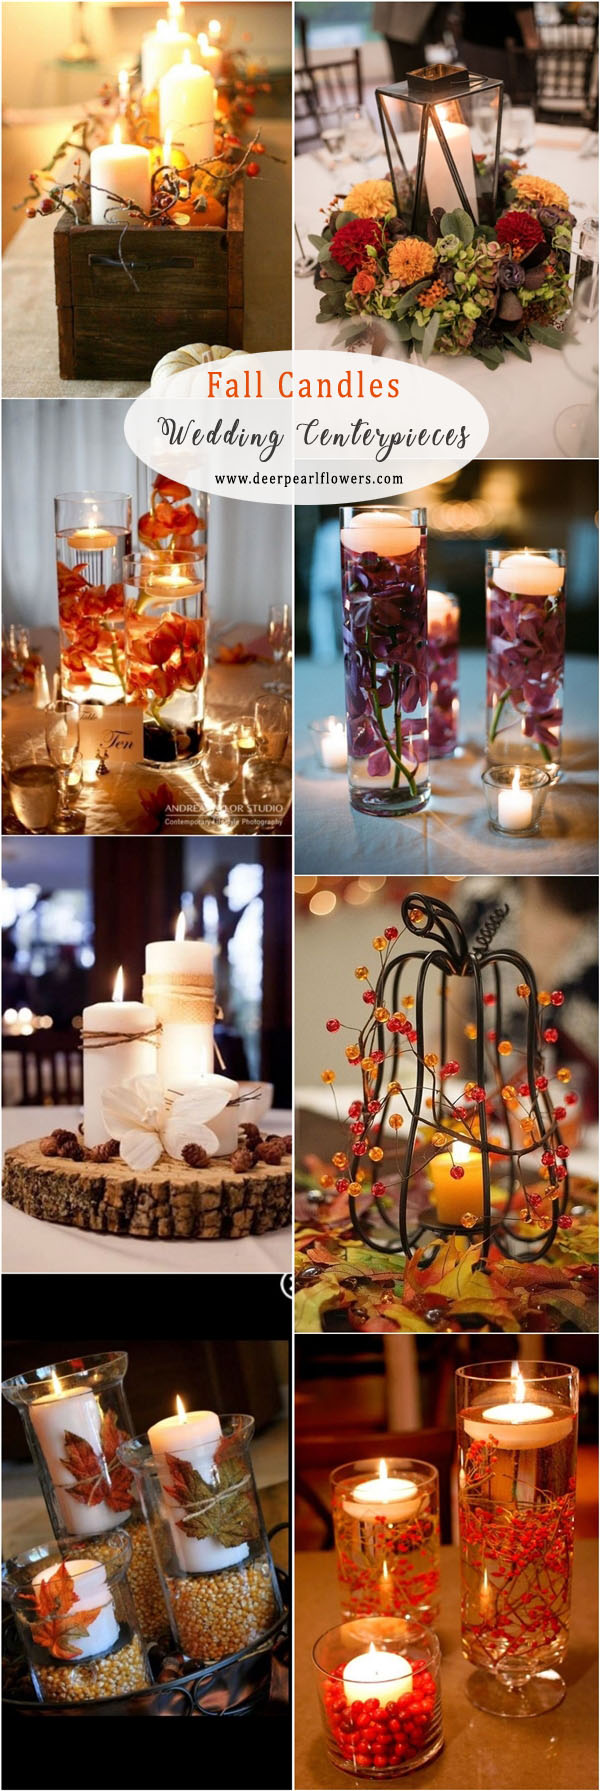 fall candles wedding centerpiece ideas